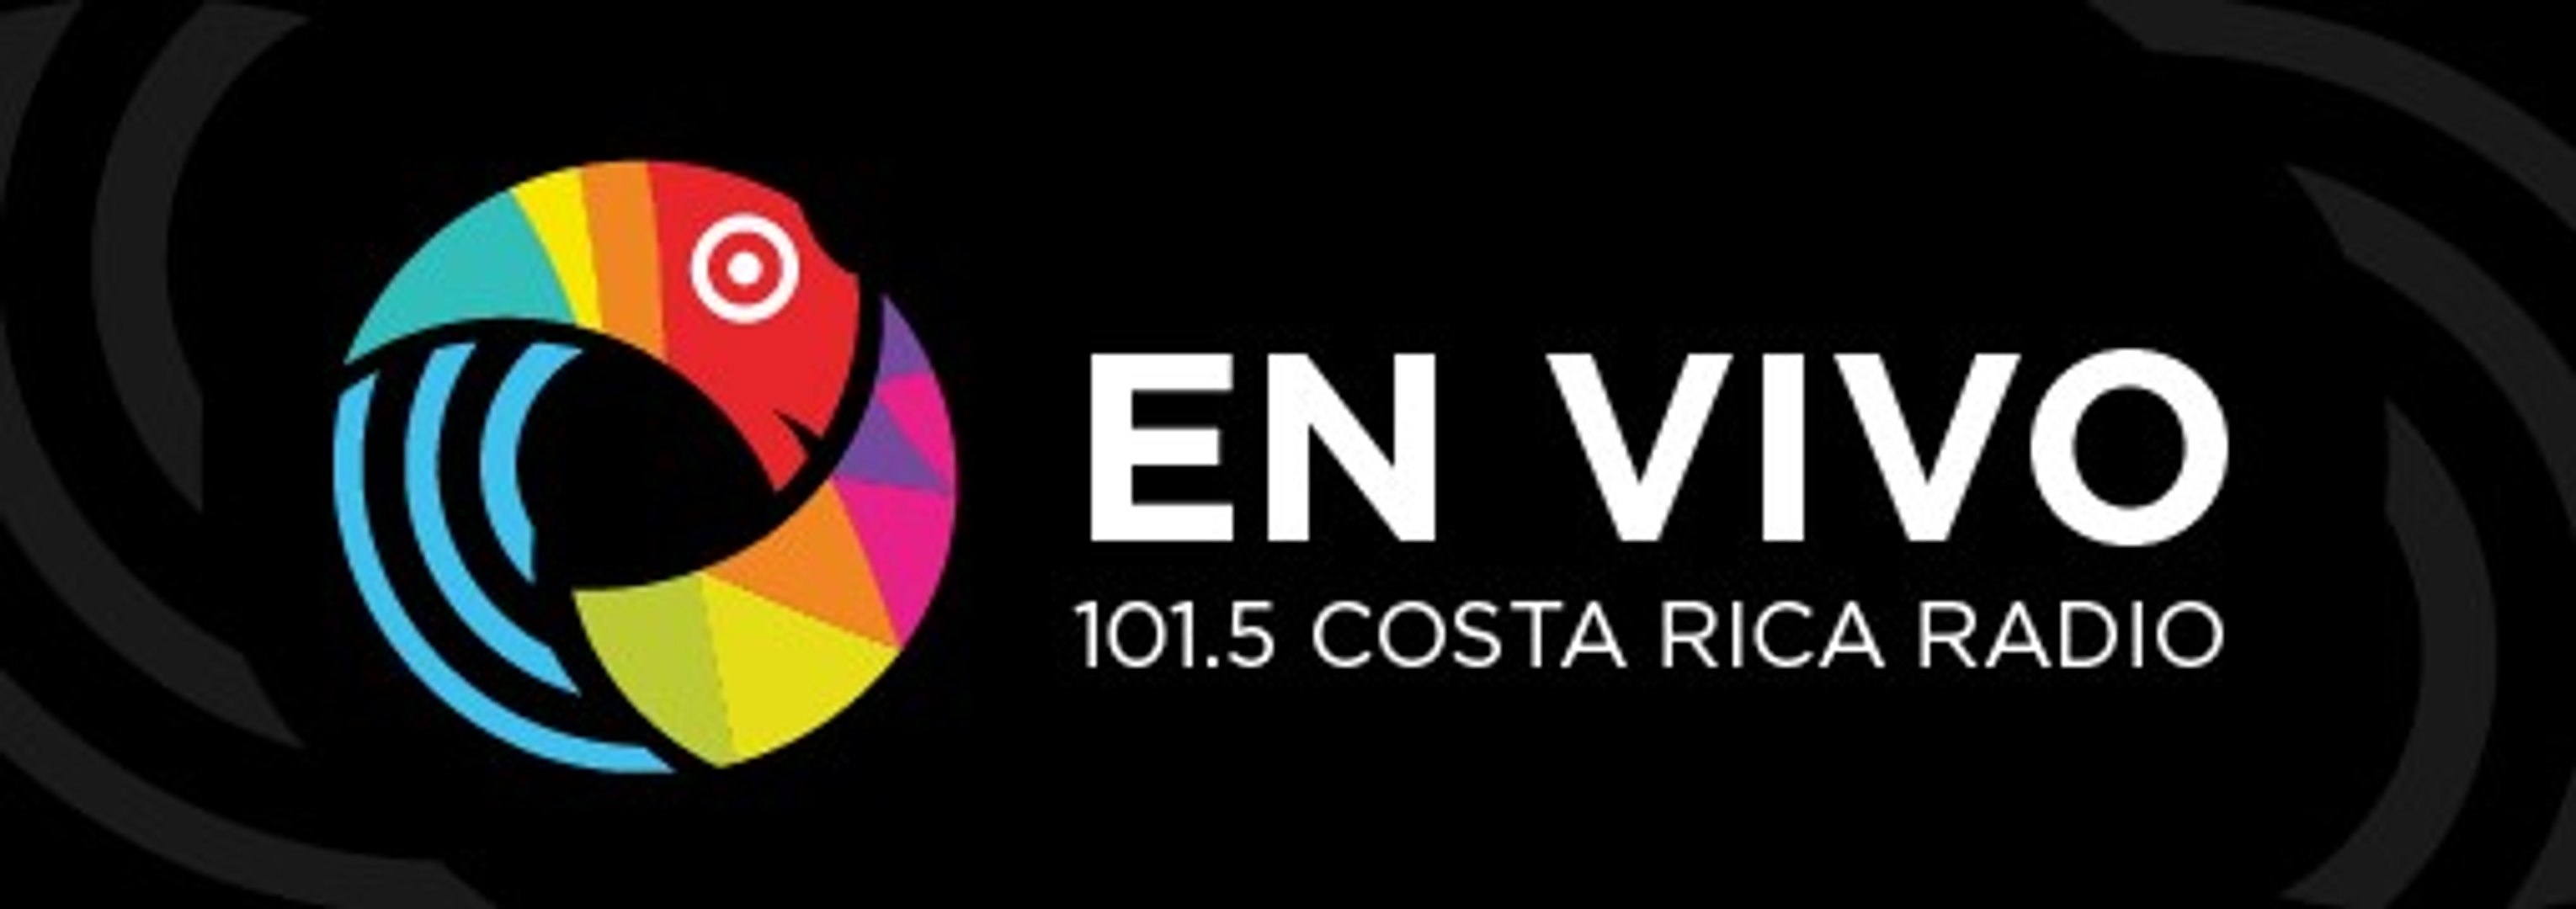 La Nacional 101.5FM - En vivo - Vídeo Dailymotion